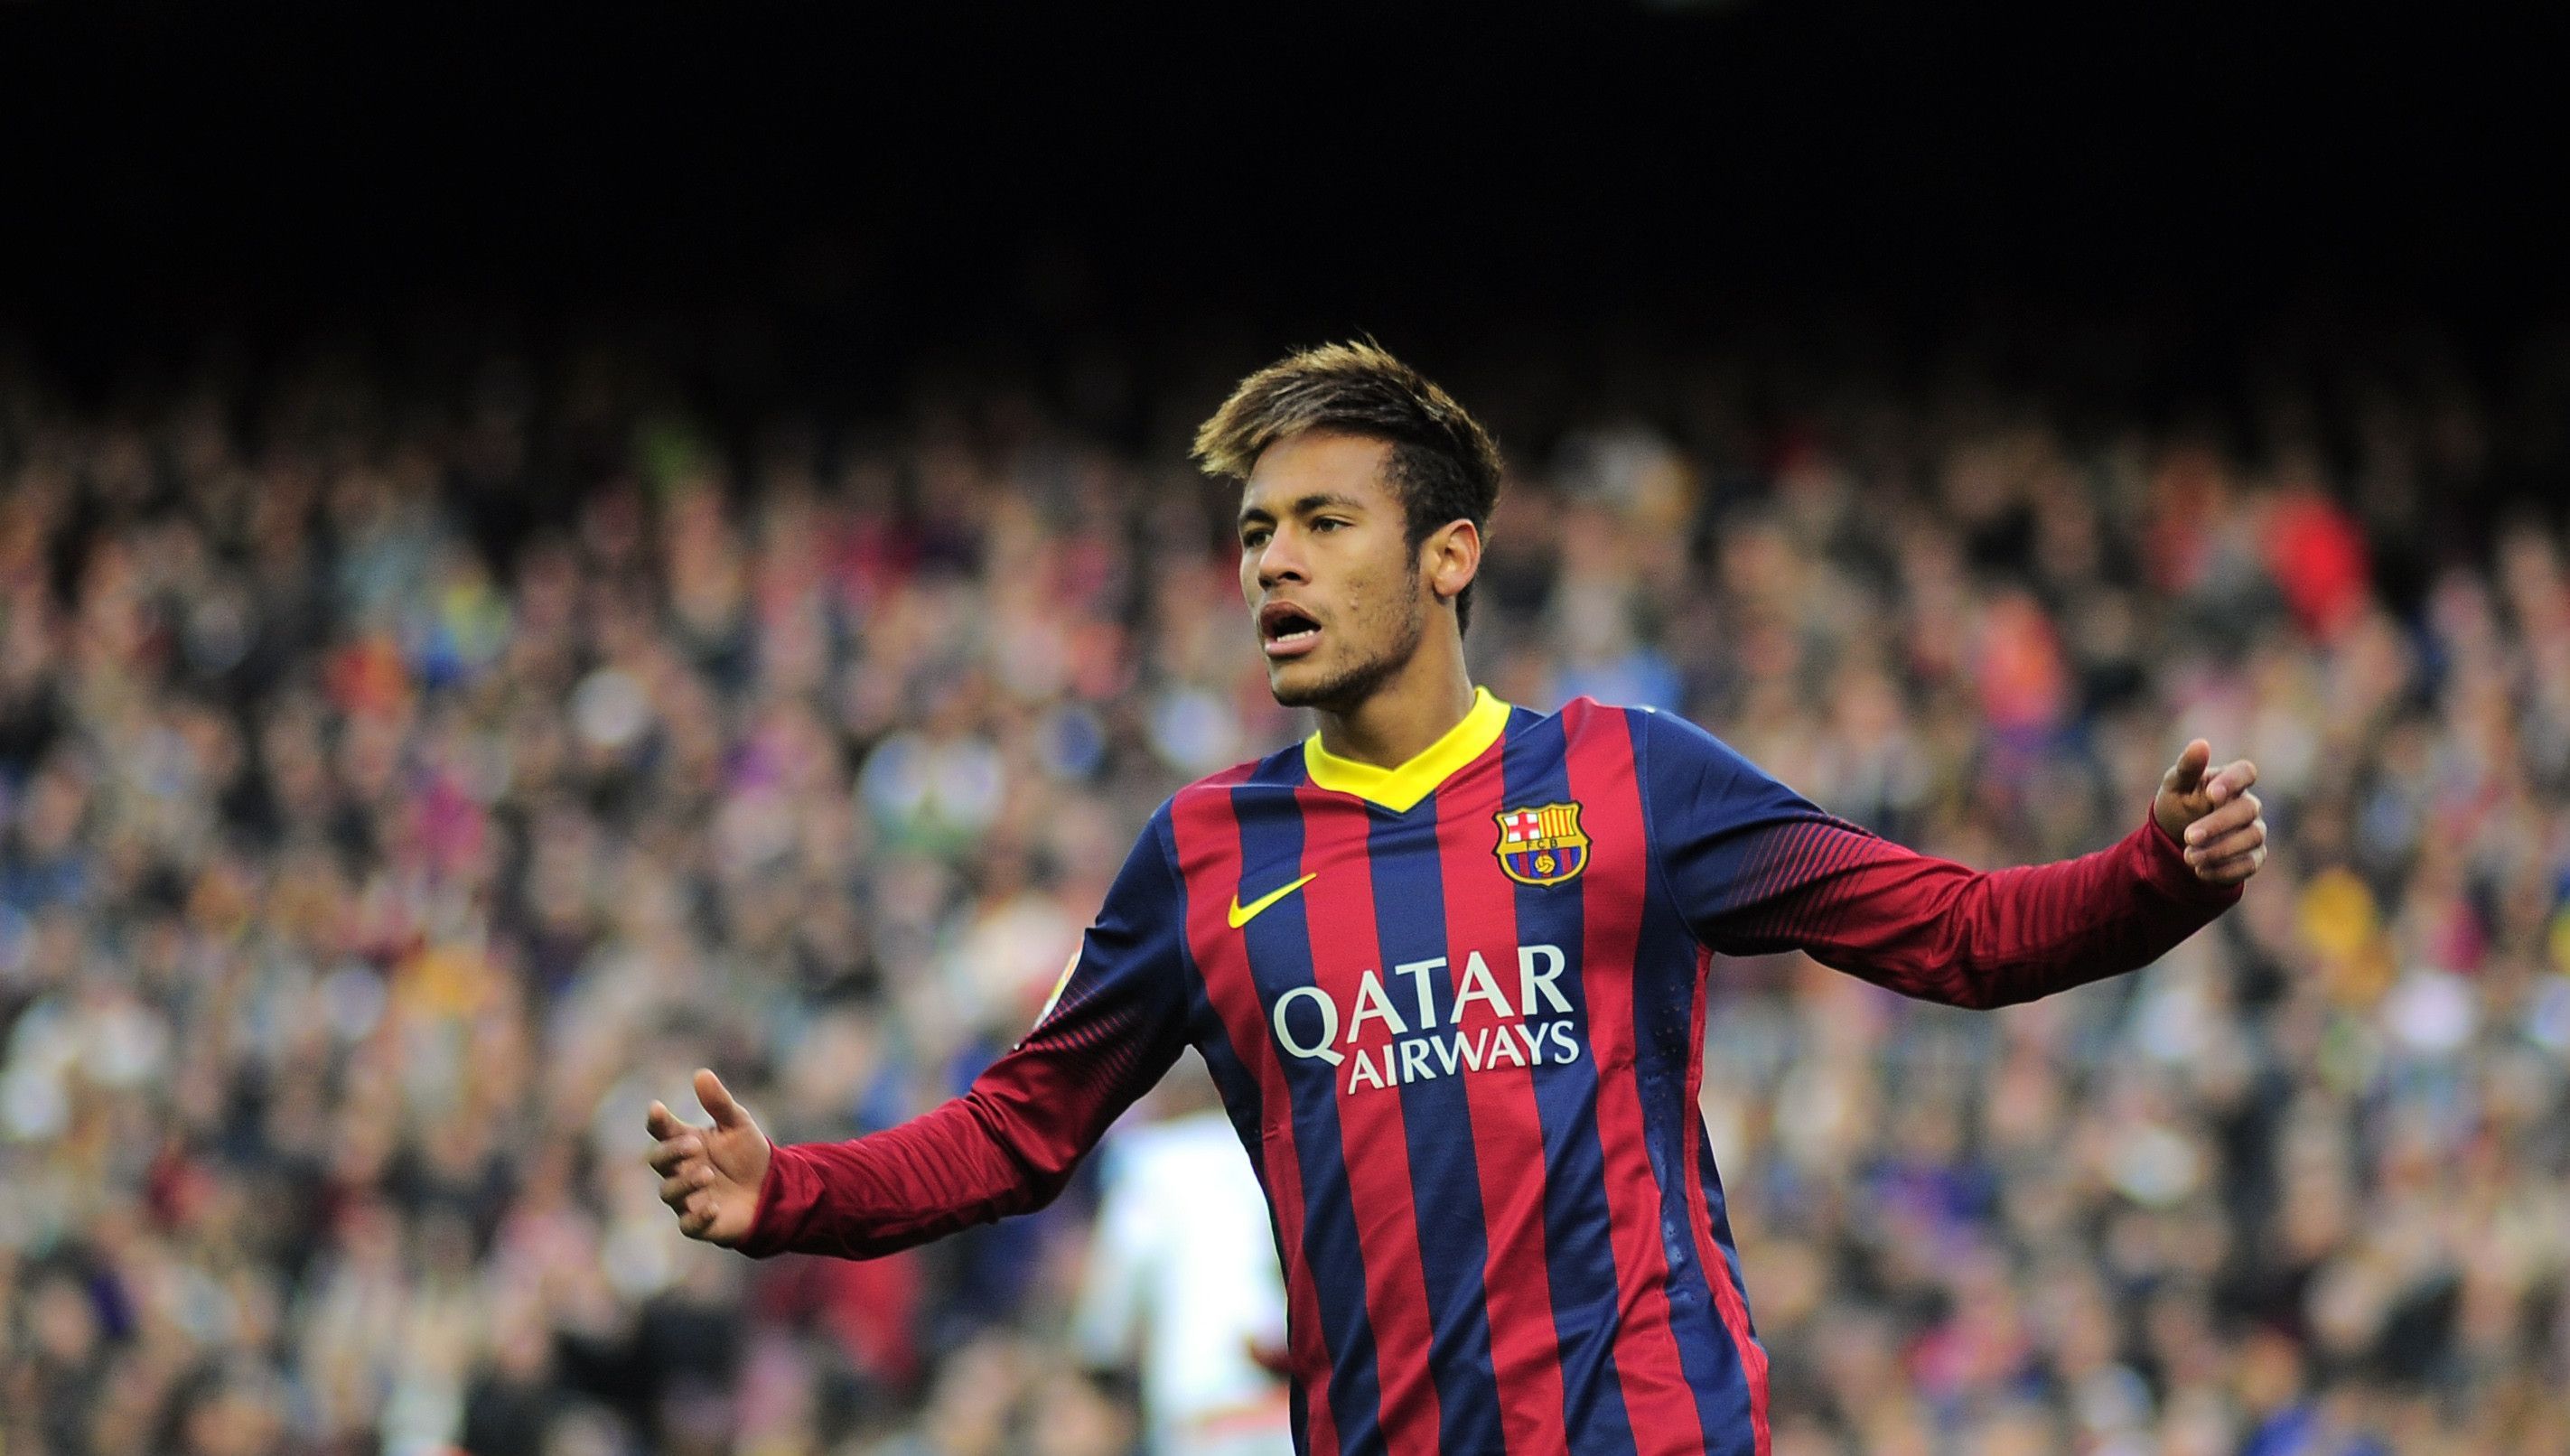 Neymar Hd Wallpapers 1080p - Neymar Jr Barcelona - HD Wallpaper 